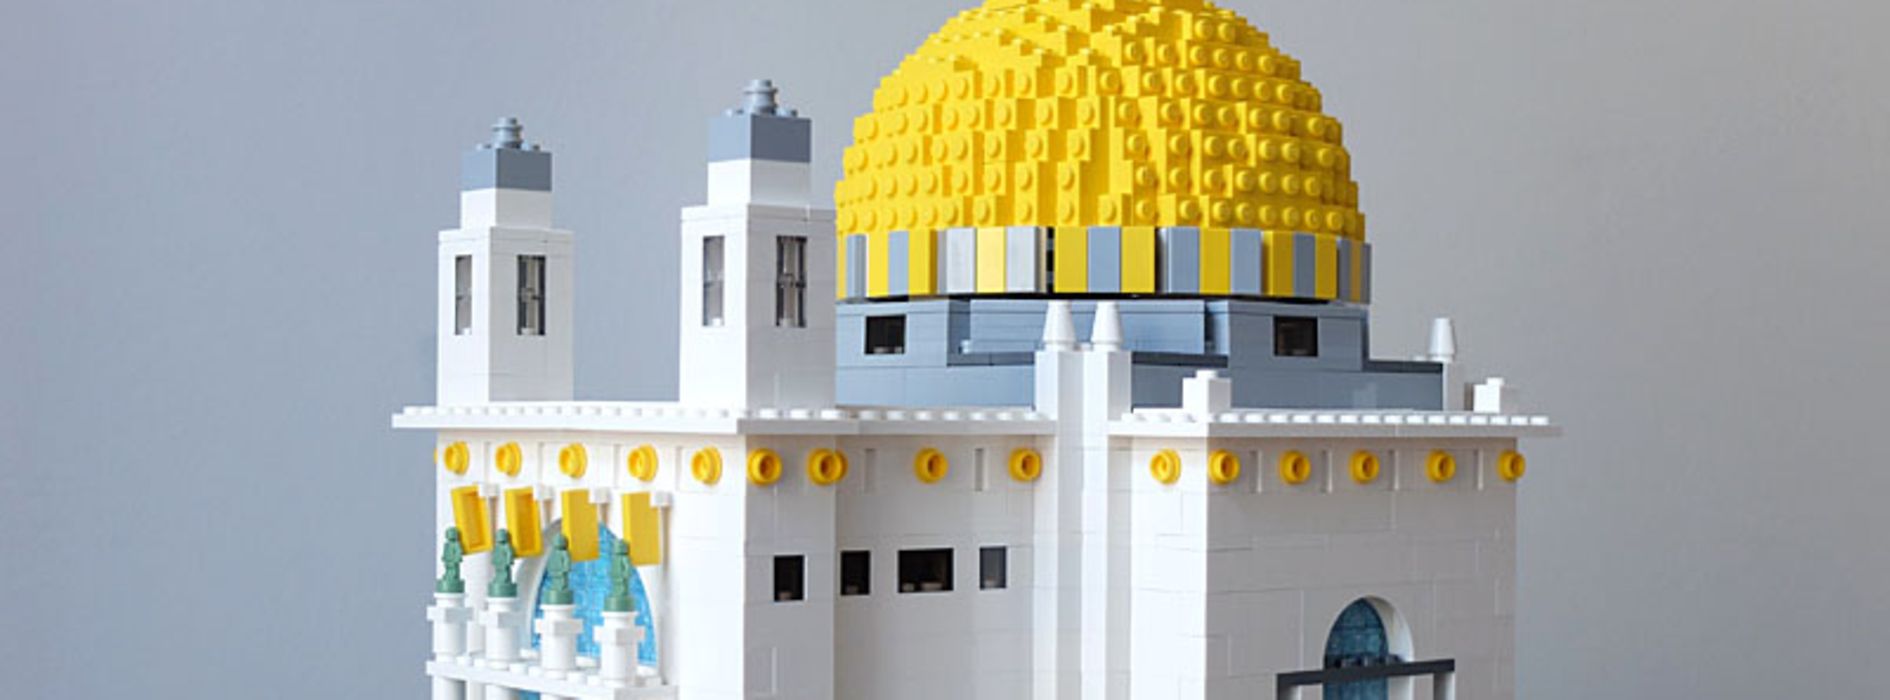 Kościół am Steinhof z Lego